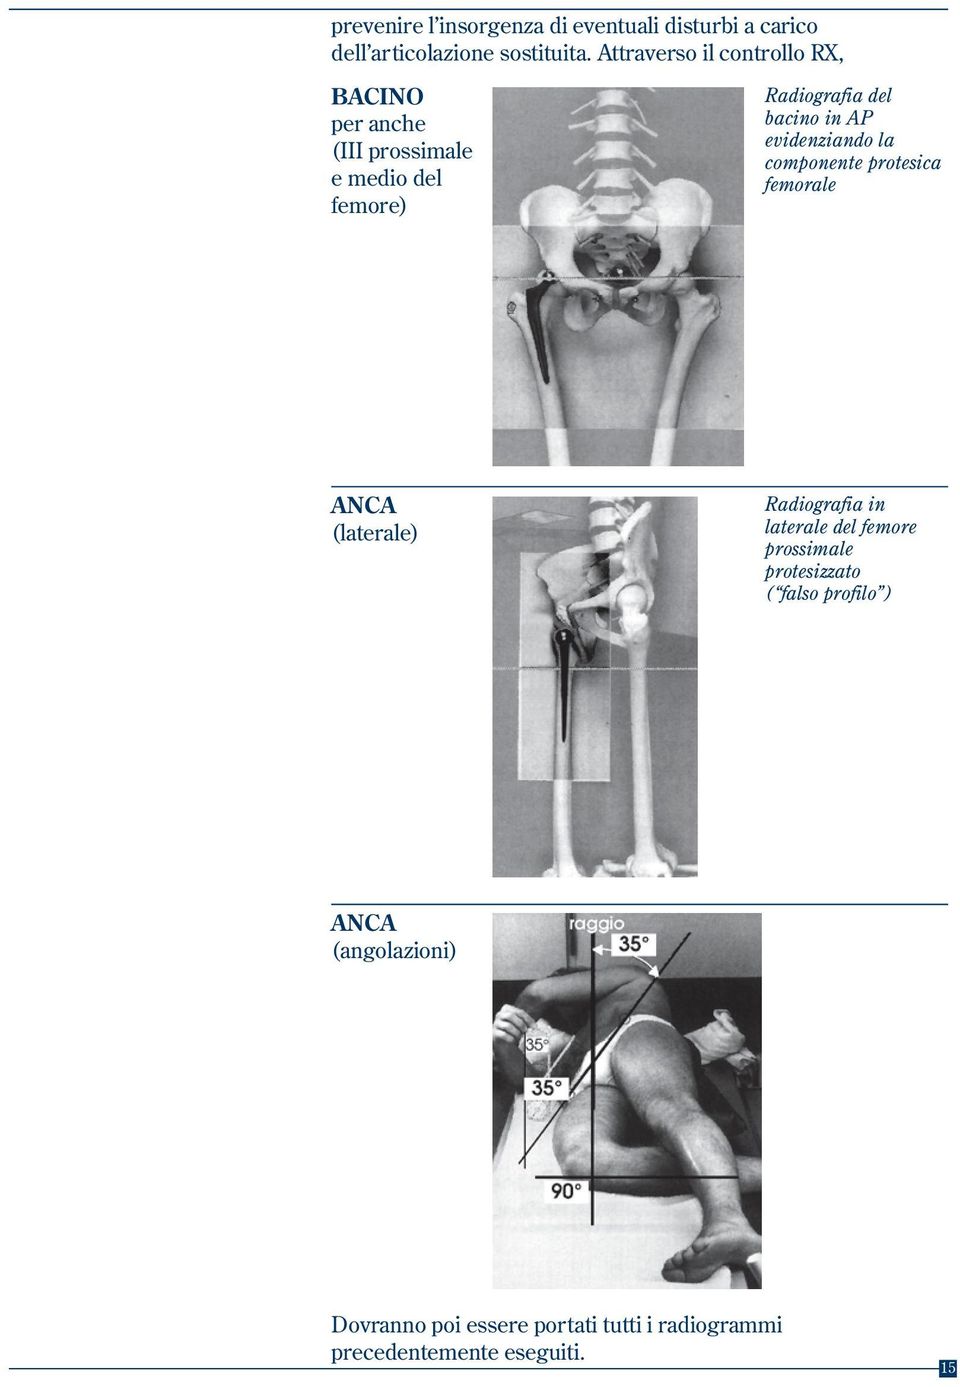 AP evidenziando la componente protesica femorale ANCA (laterale) Radiografia in laterale del femore